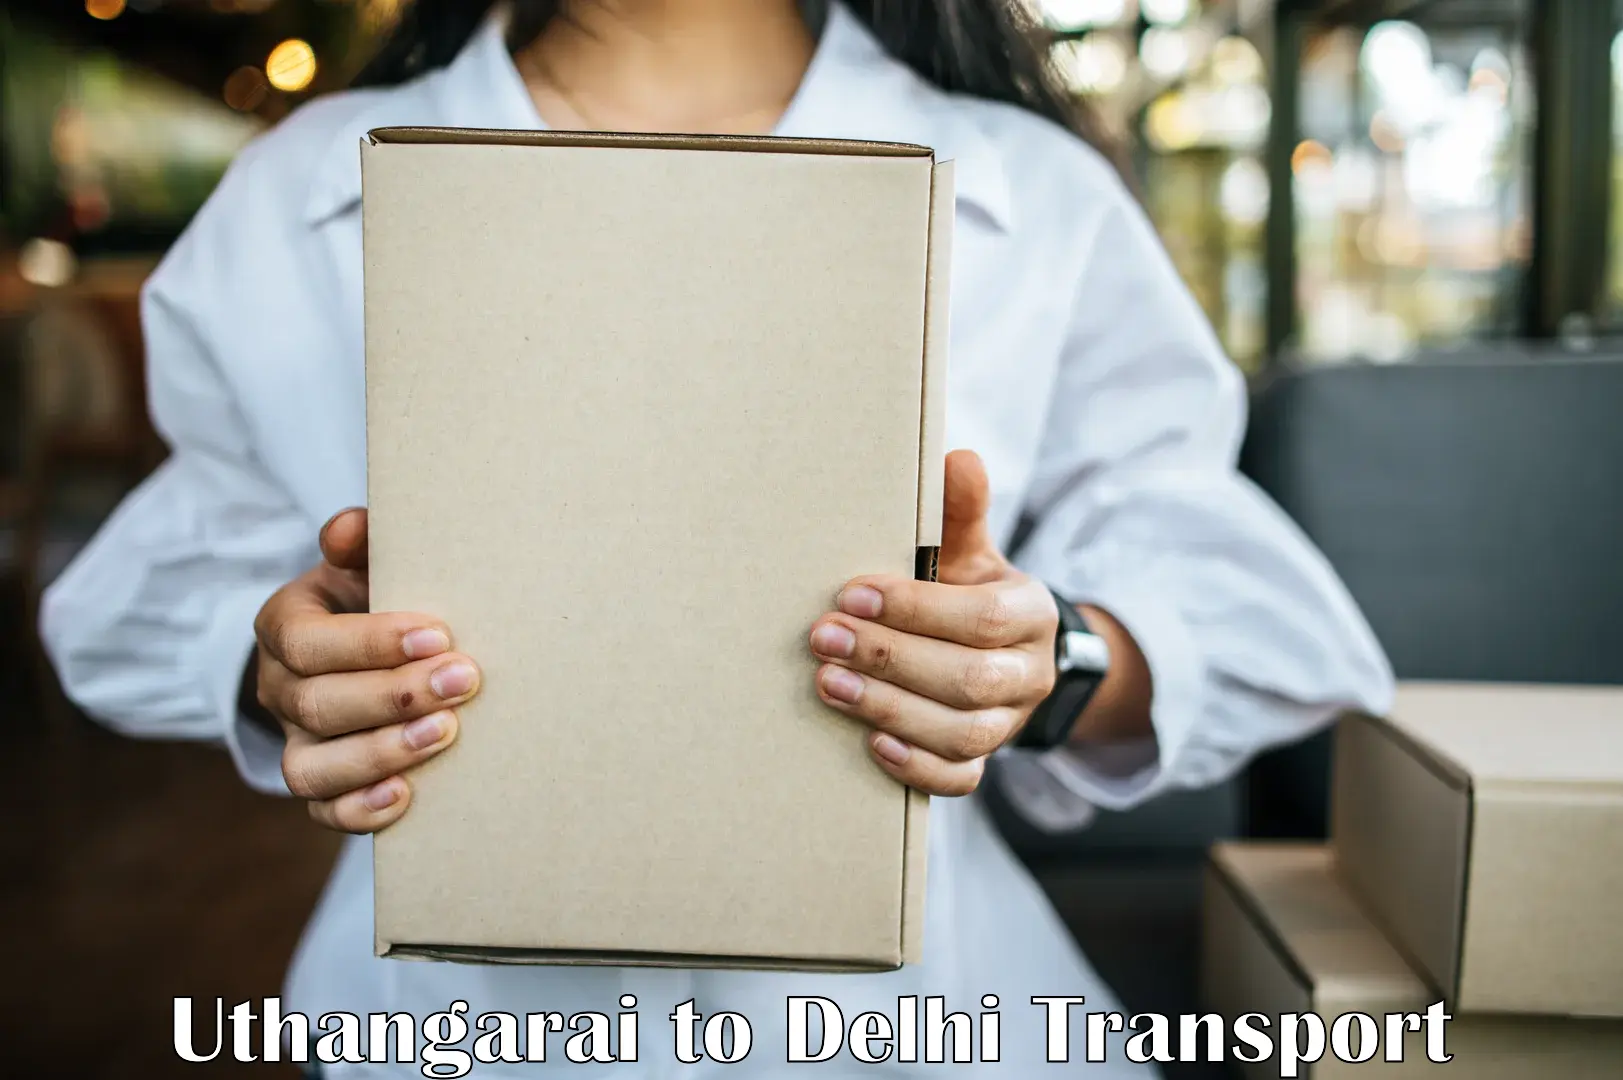 Sending bike to another city Uthangarai to Delhi